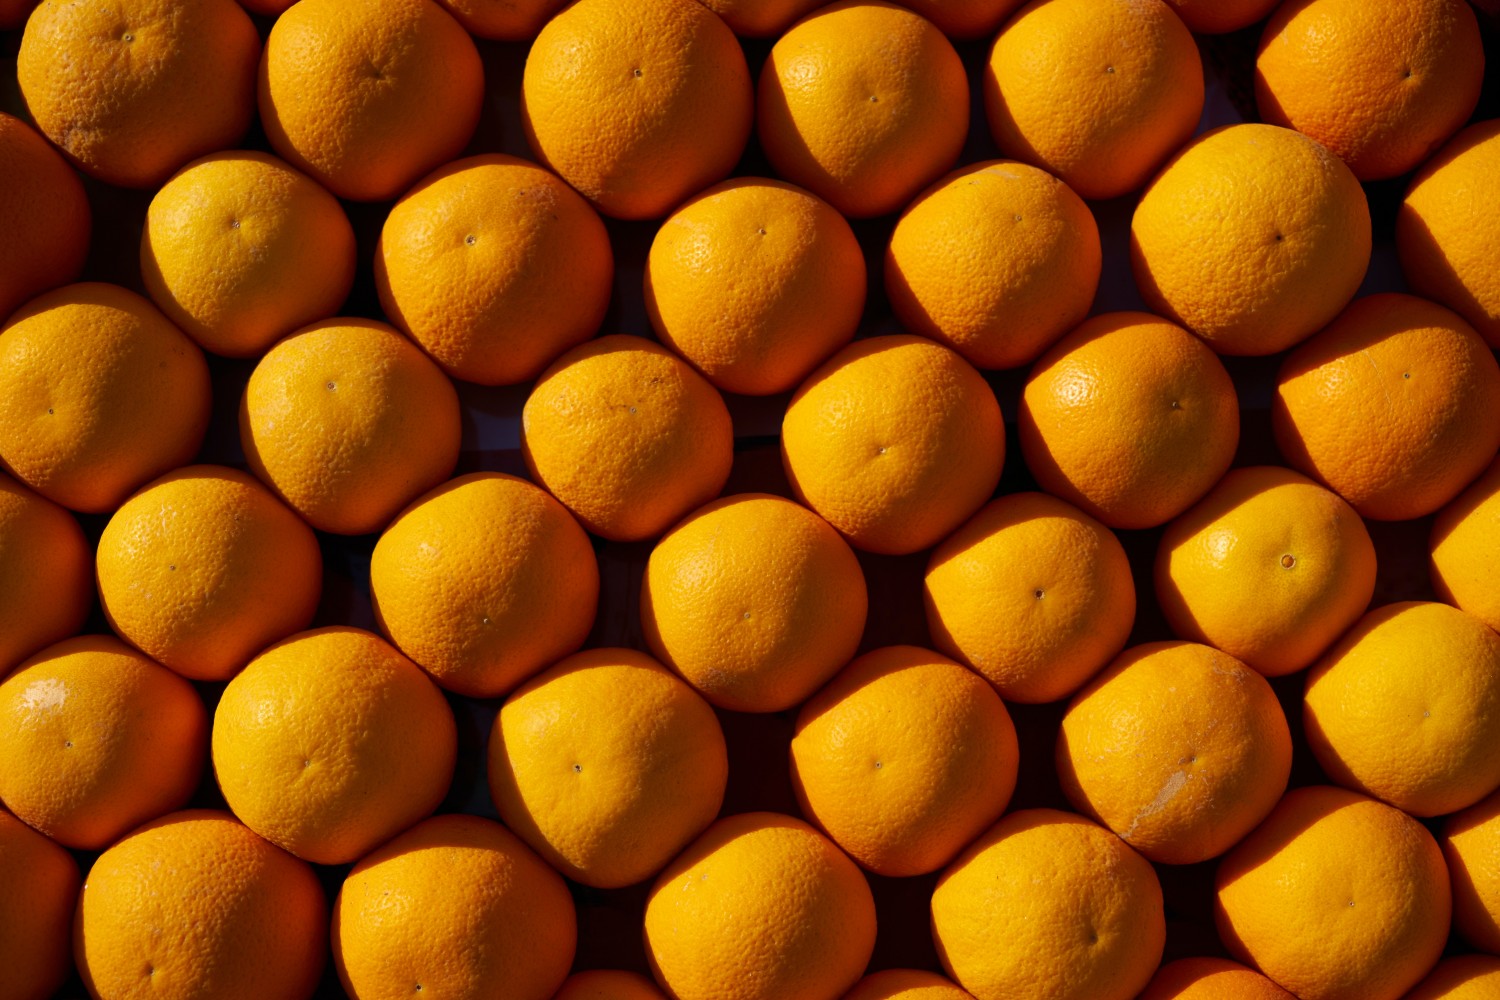 Brazil Prosecutors Seek $2.5 Bln in Damages from Alleged Orange Juice Cartel